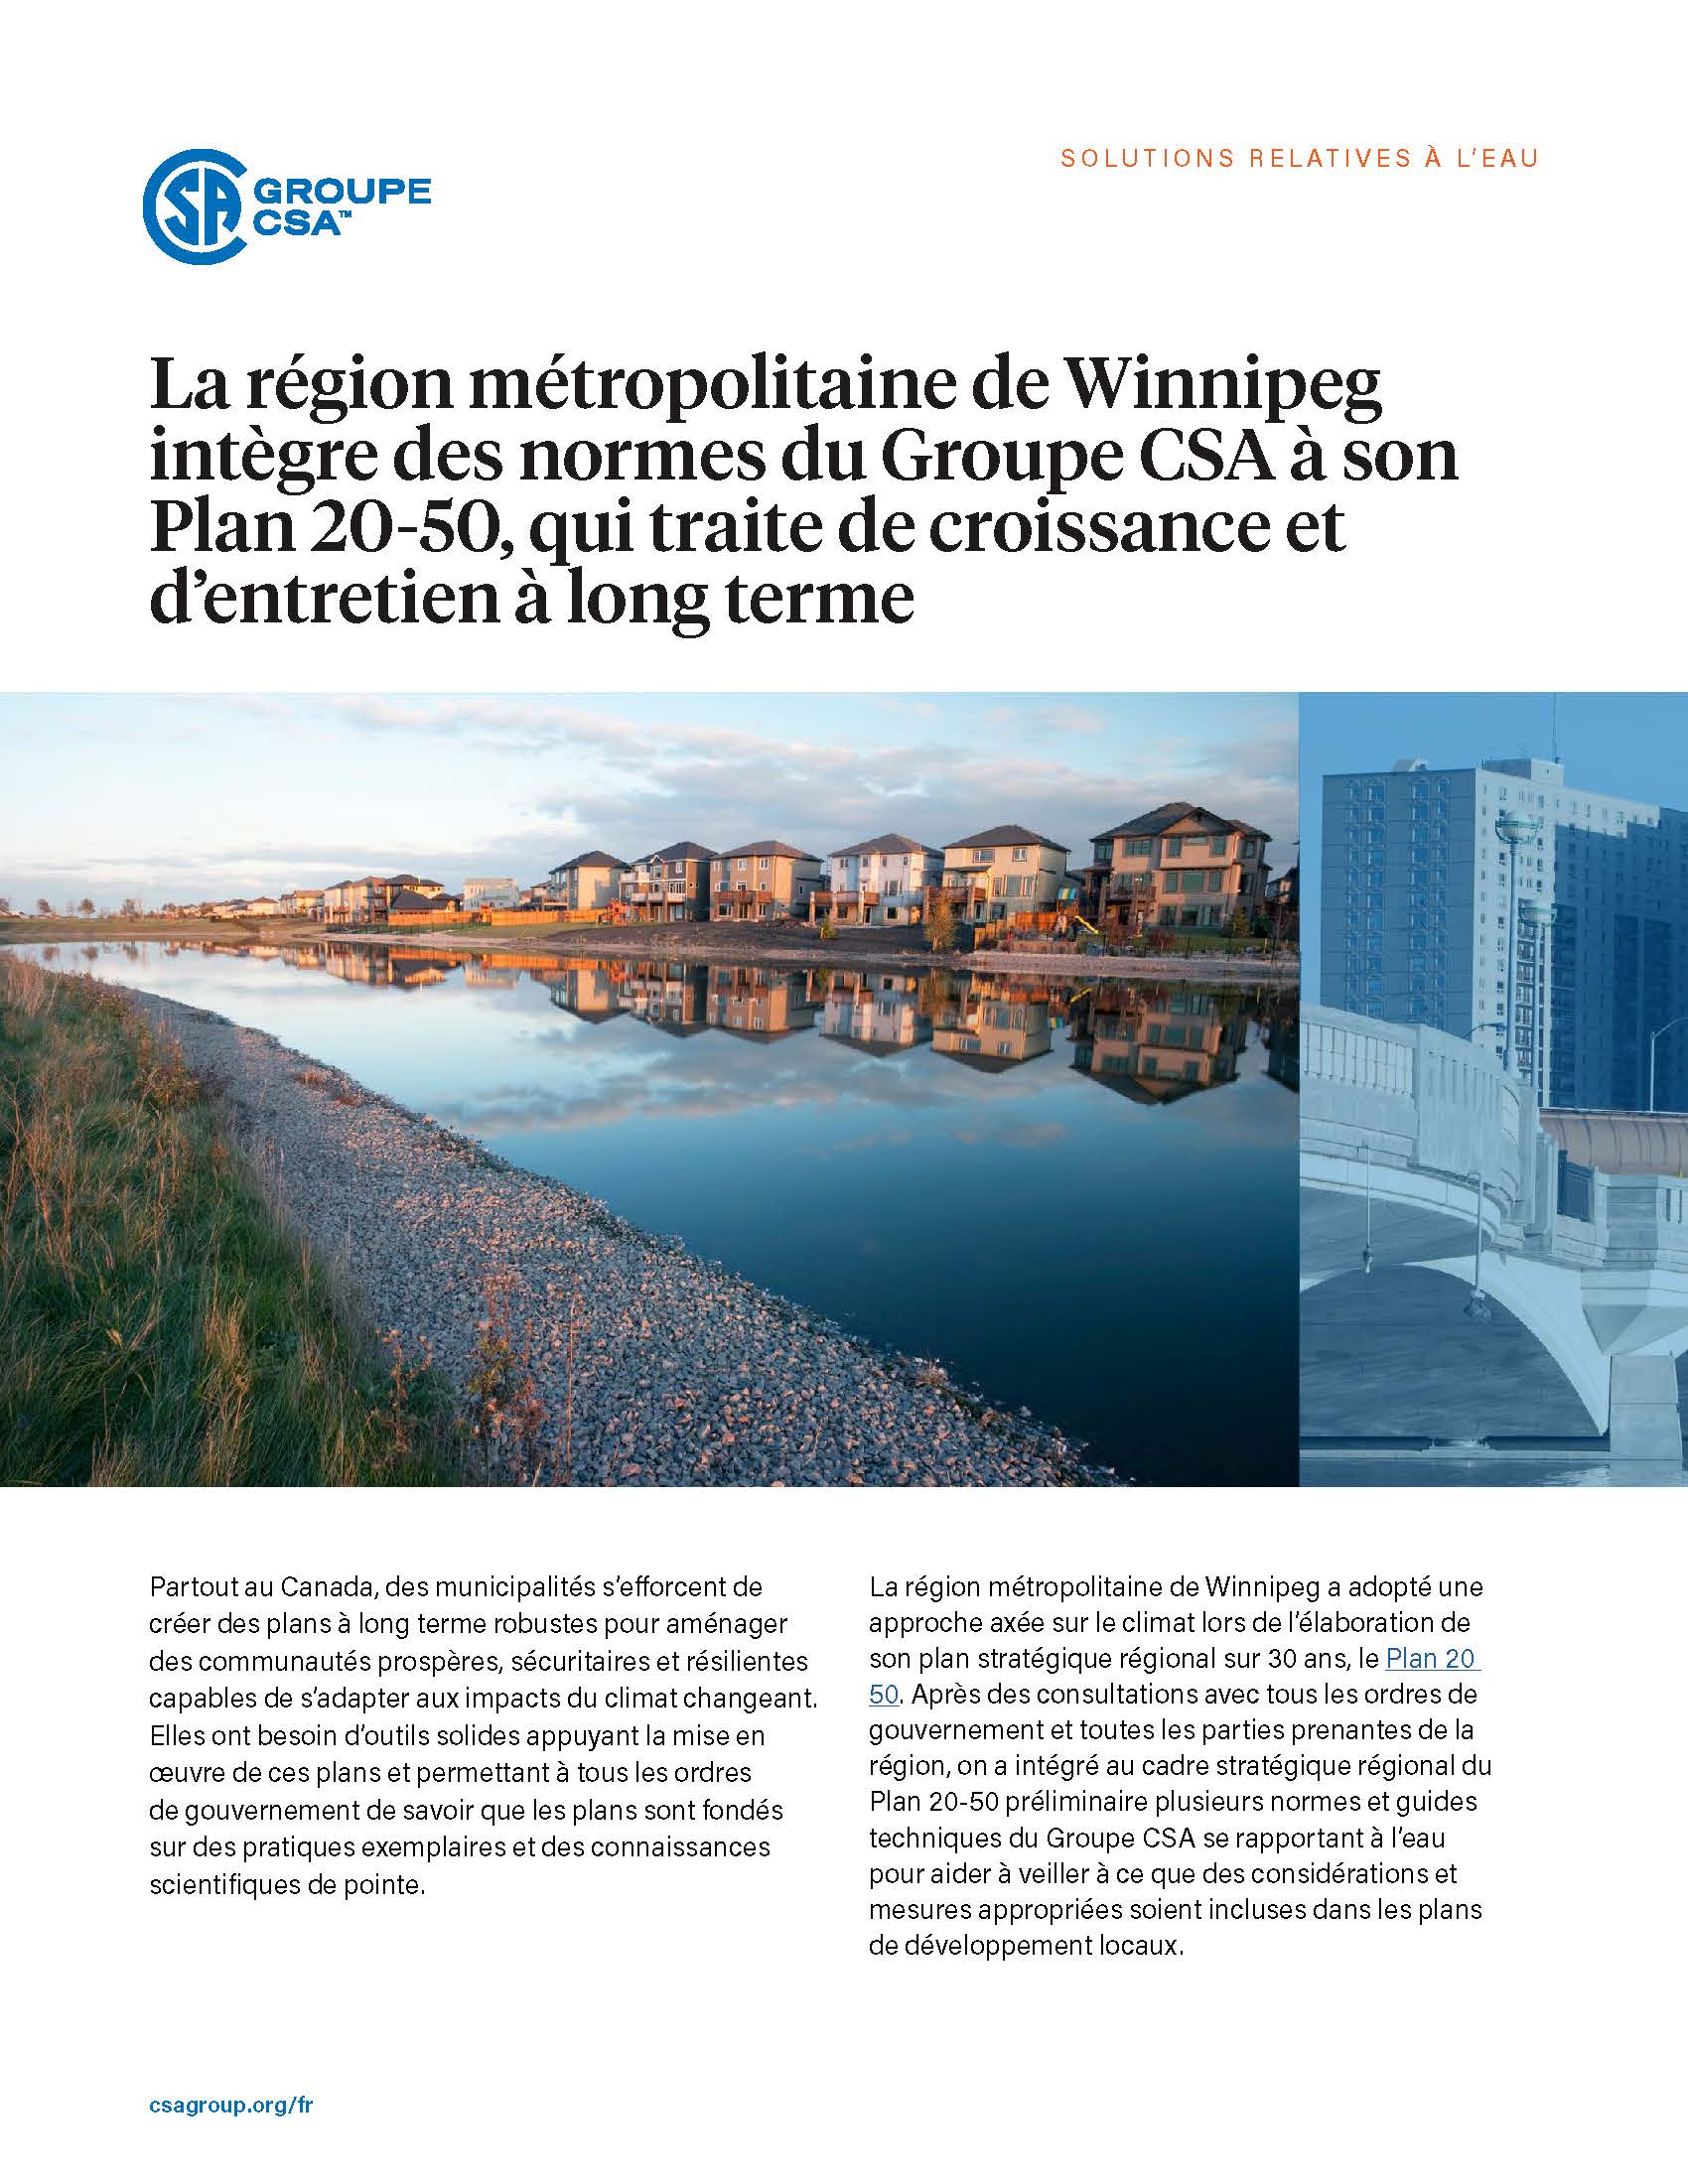 Featured Image. La région métropolitaine de Winnipeg intègre des normes du Groupe CSA à son Plan 20-50